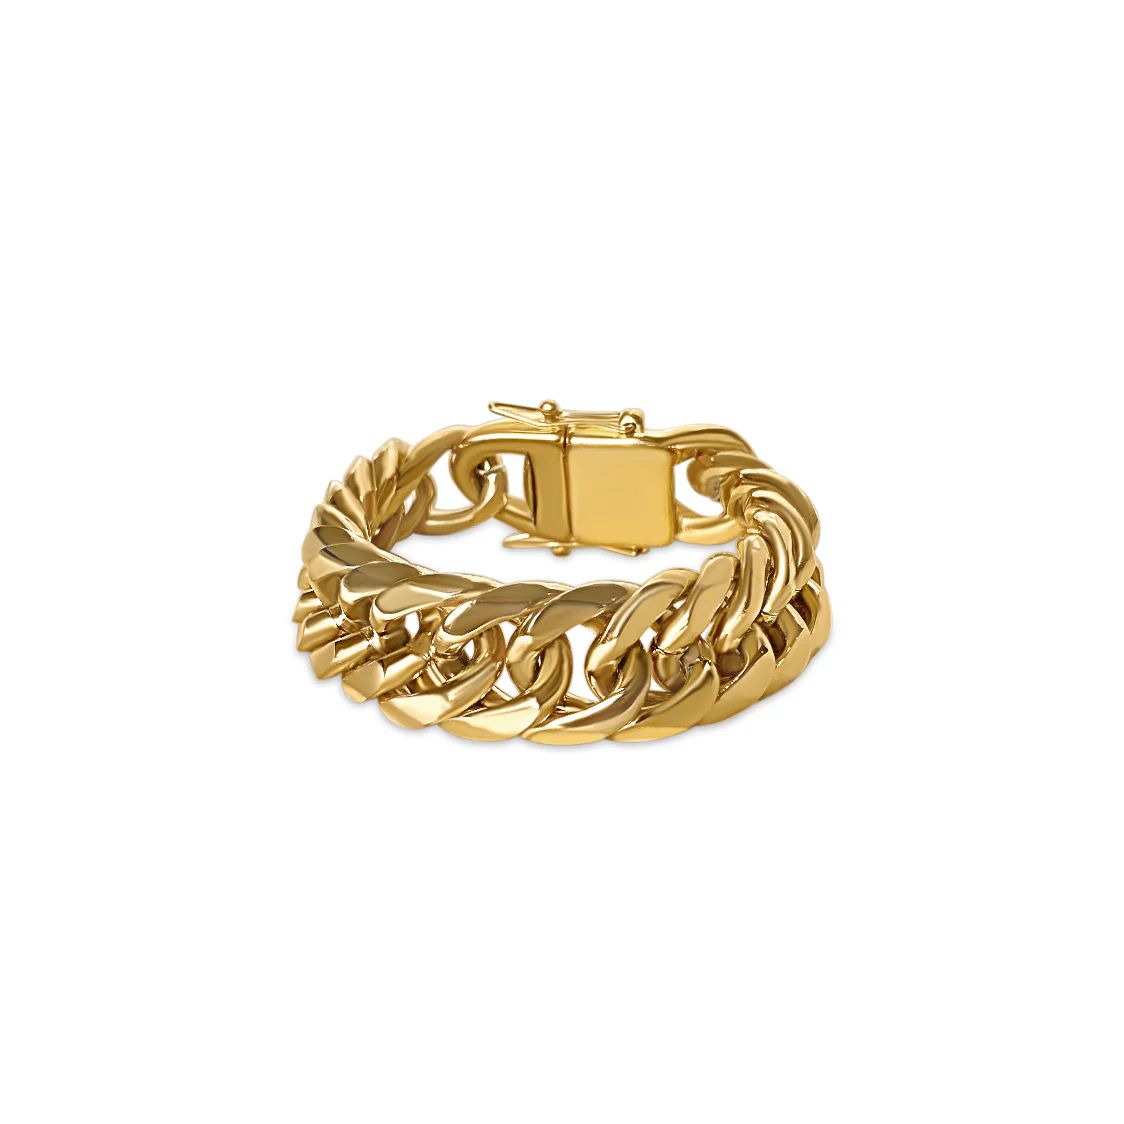 The Gold Juliet Bracelet | Anisa Sojka